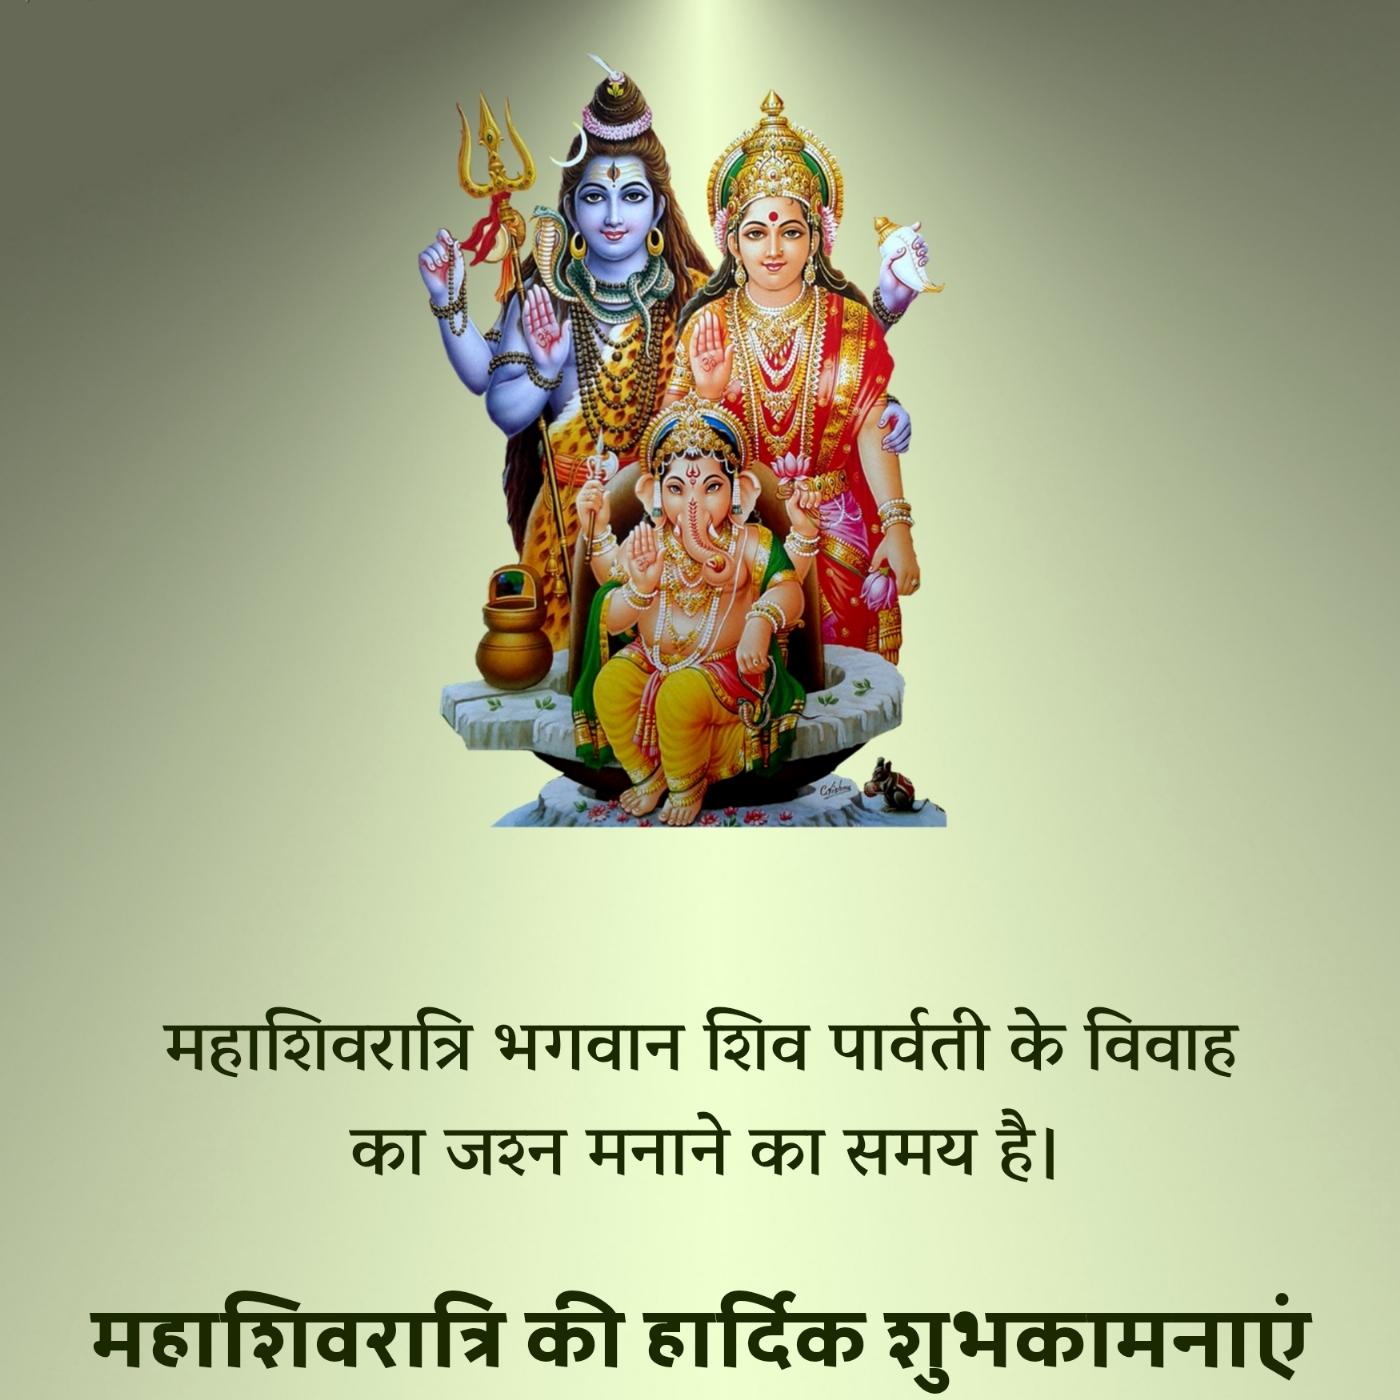 महाशिवरात्रि भगवान शिव पार्वती के विवाह का जश्न मनाने का समय है